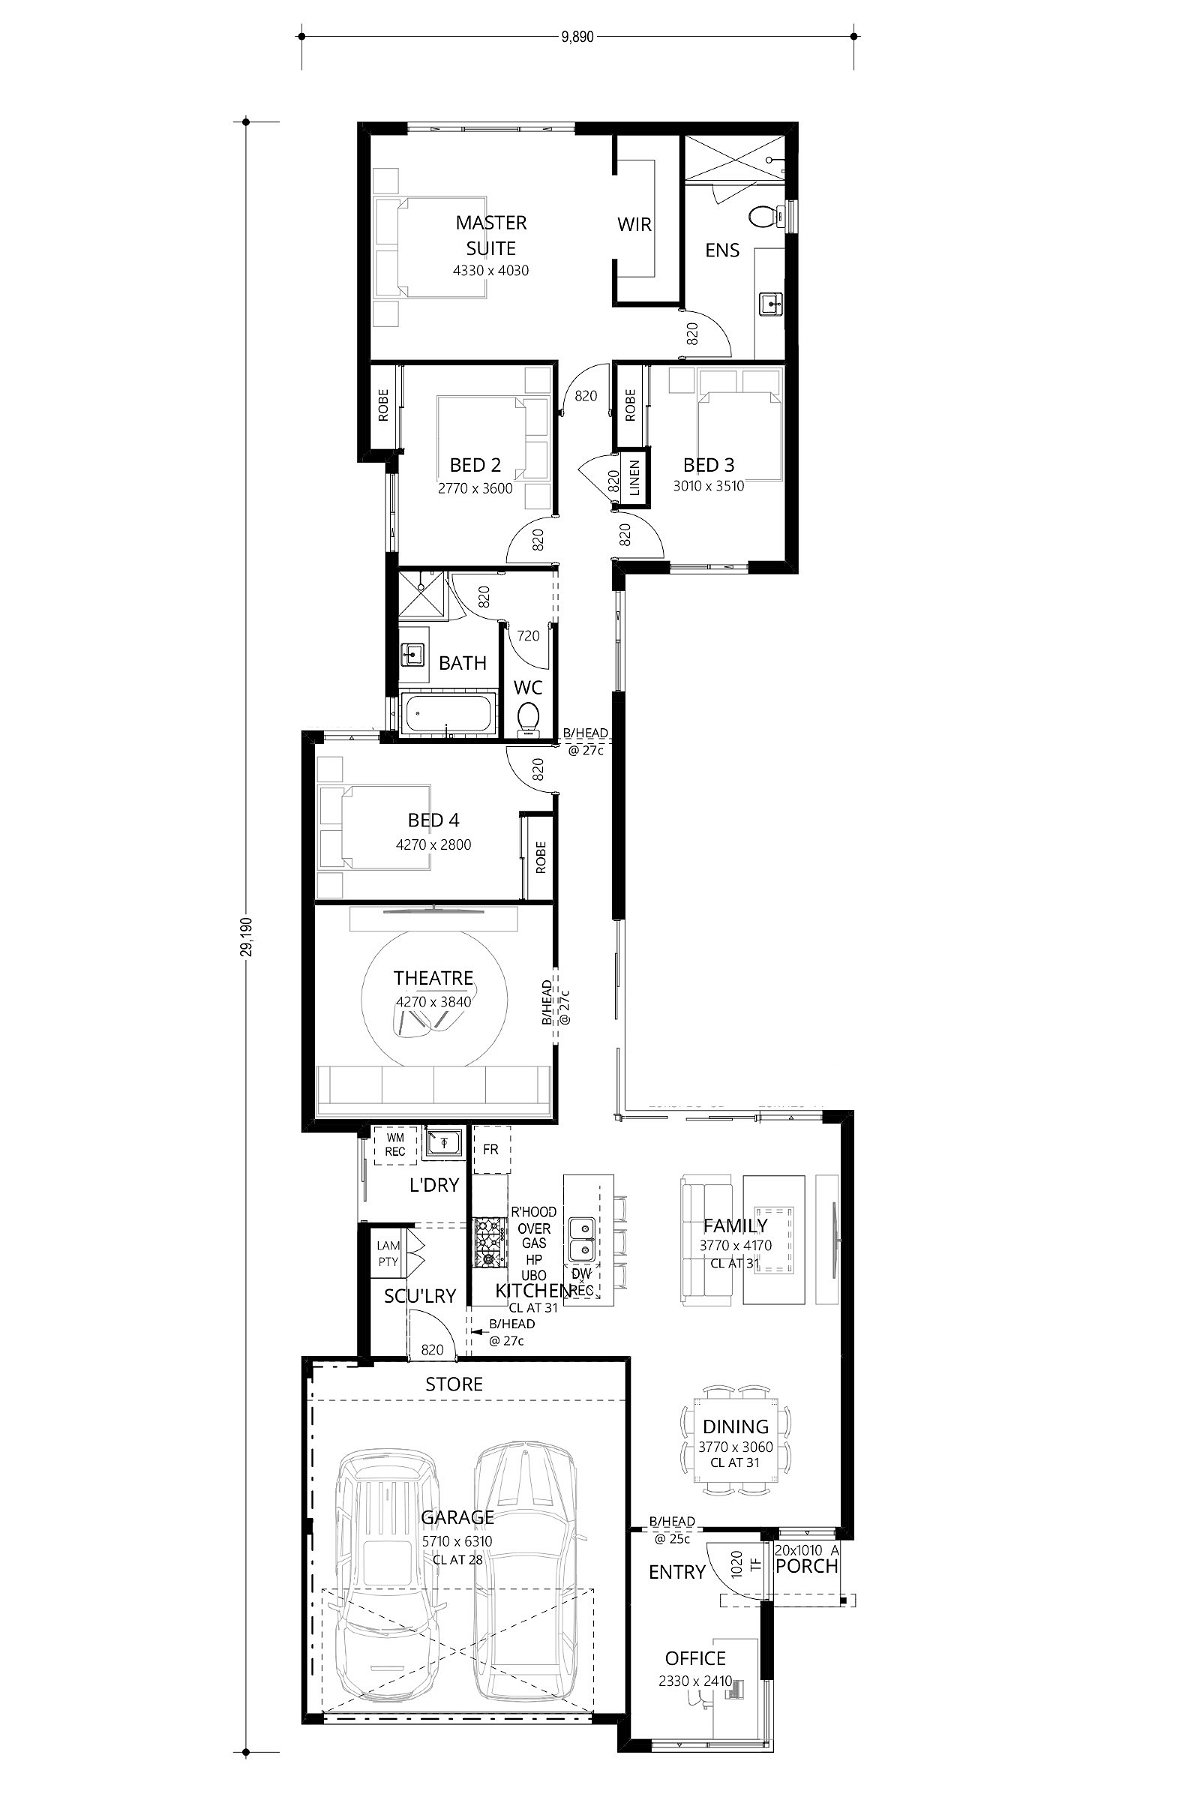 Residential Attitudes - Pointed Wonder - Floorplan - Pointed Wonder Floorplan Website